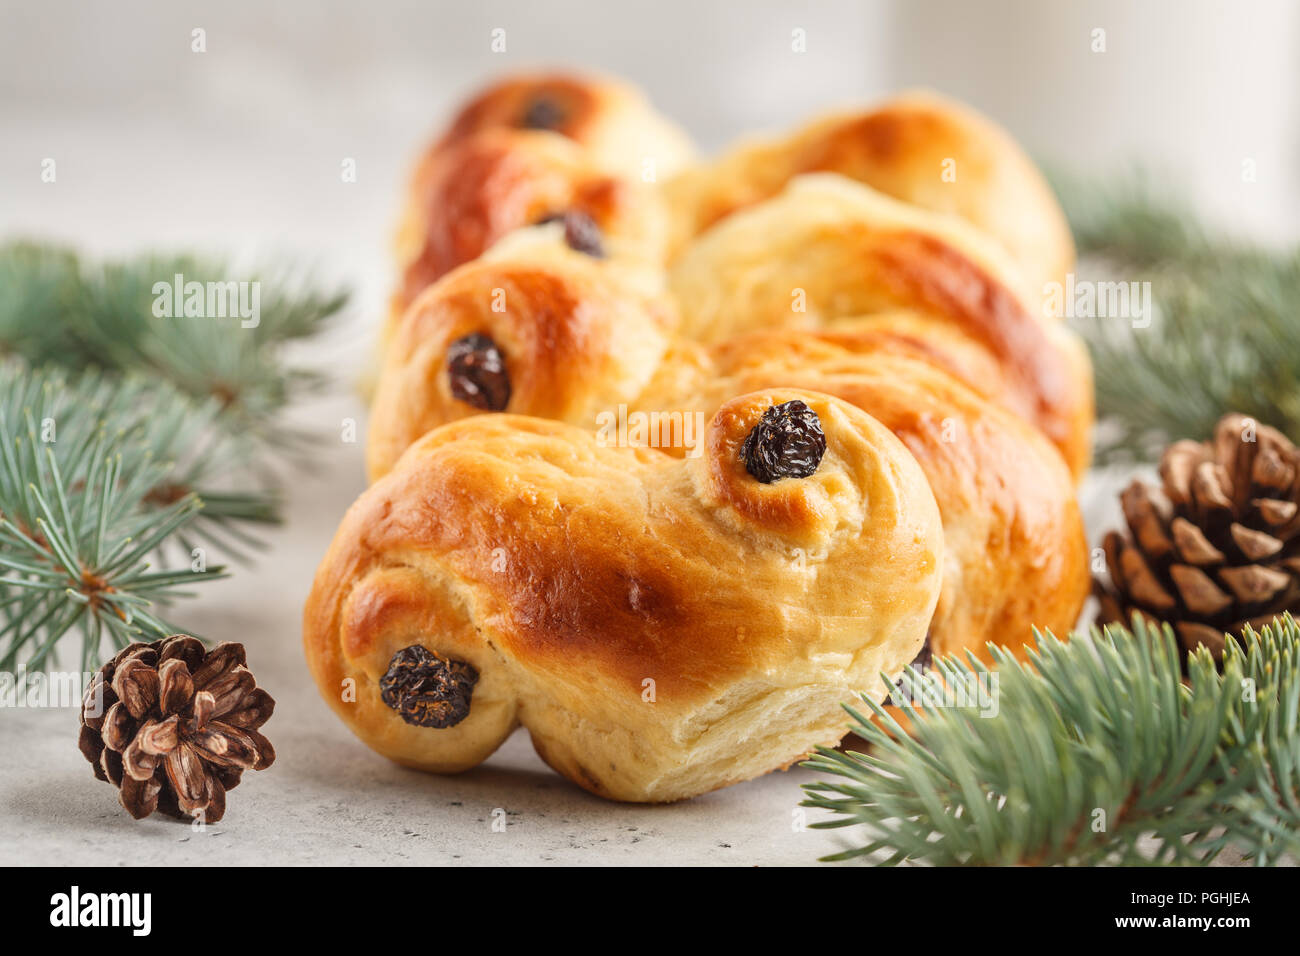 Noël suédois traditionnel (petits pains au safran ou lussebulle lussekatt). Noël suédois. Fond blanc, décoration de Noël. Banque D'Images